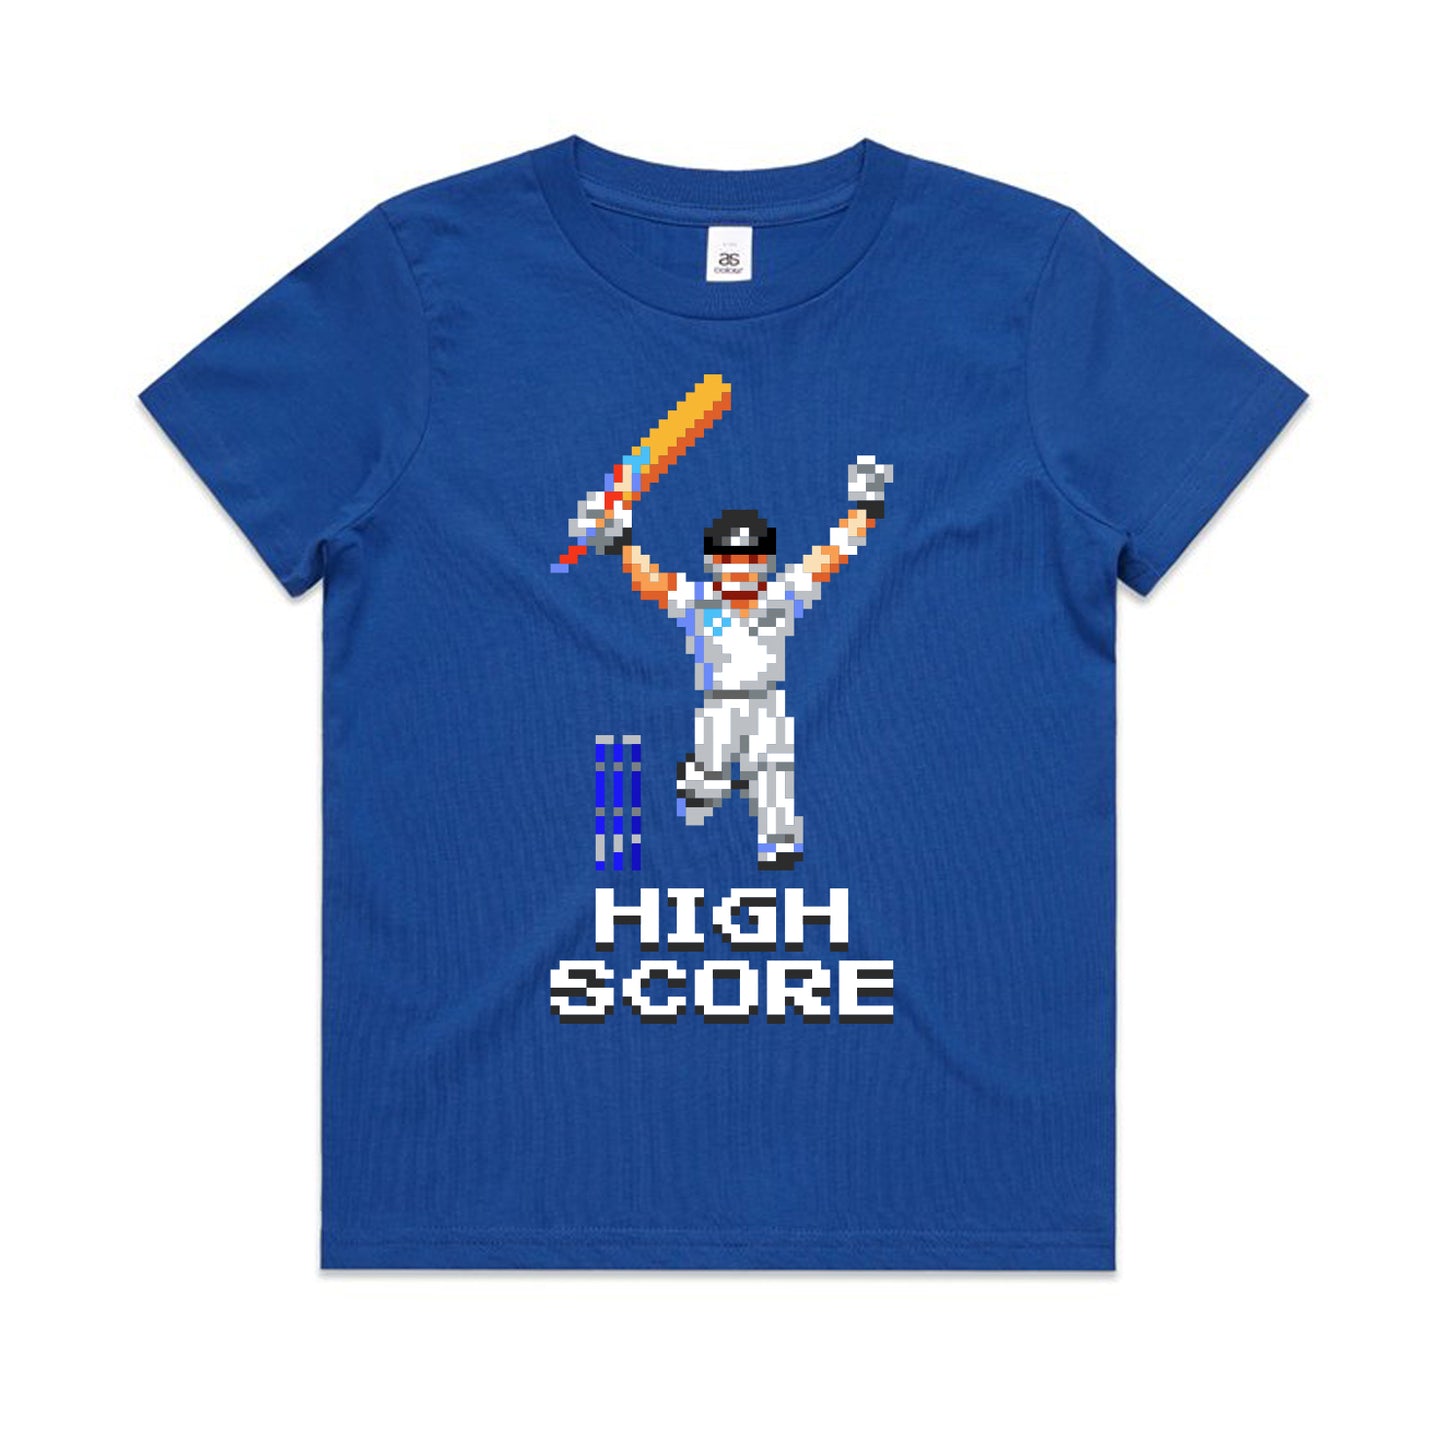 High Score cricket blue t-shirt kids